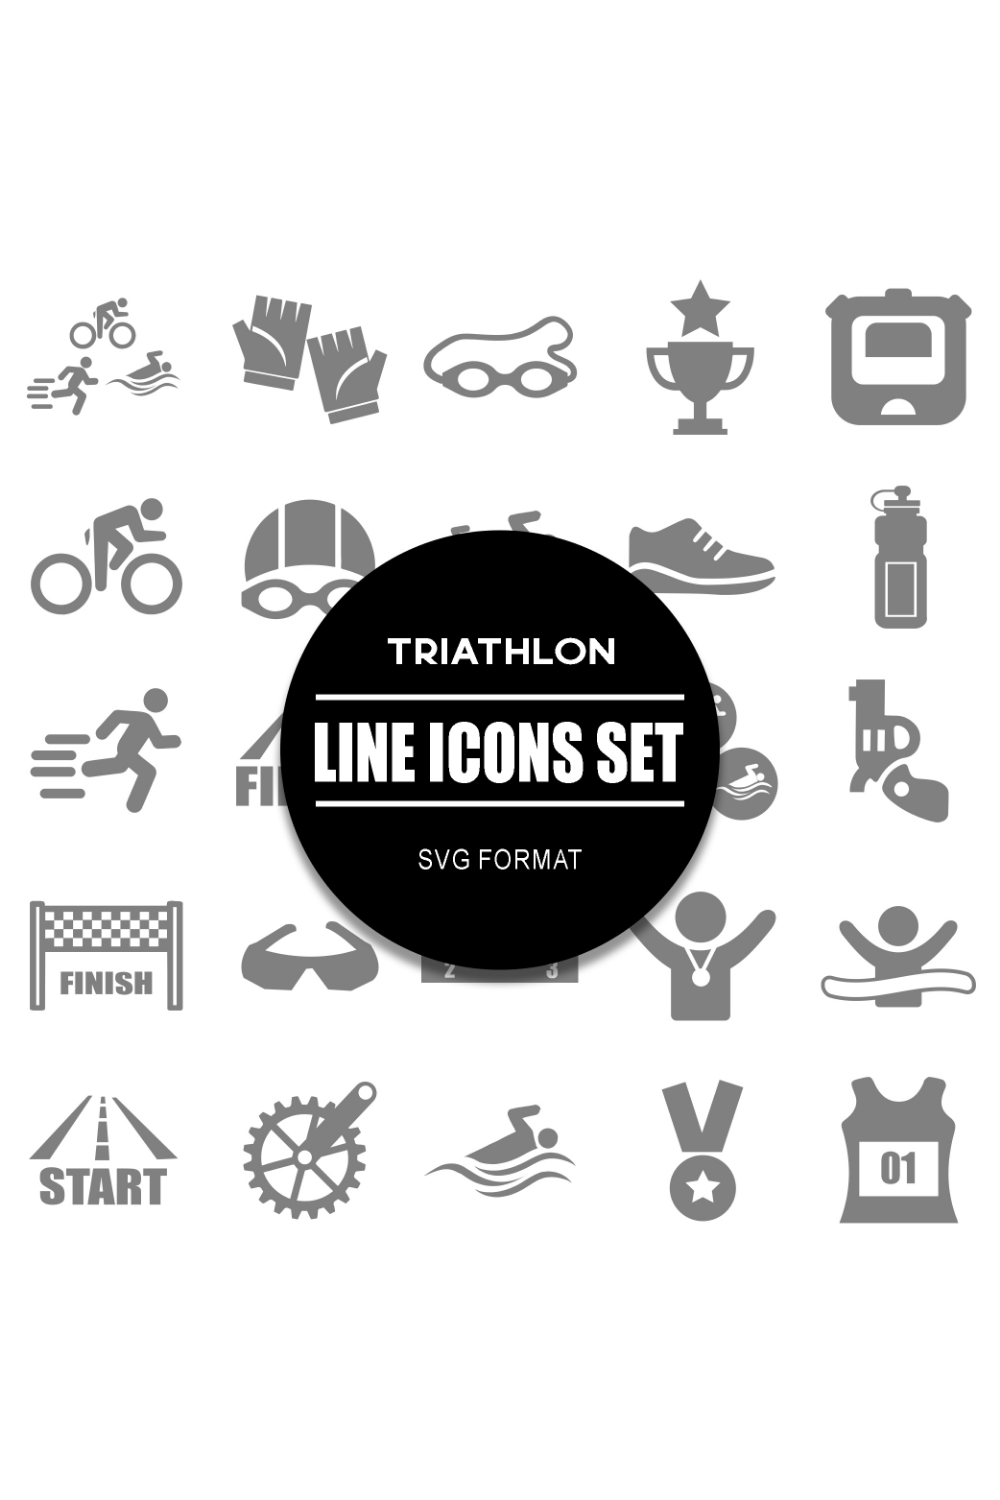 Triathlon Icon Set pinterest preview image.